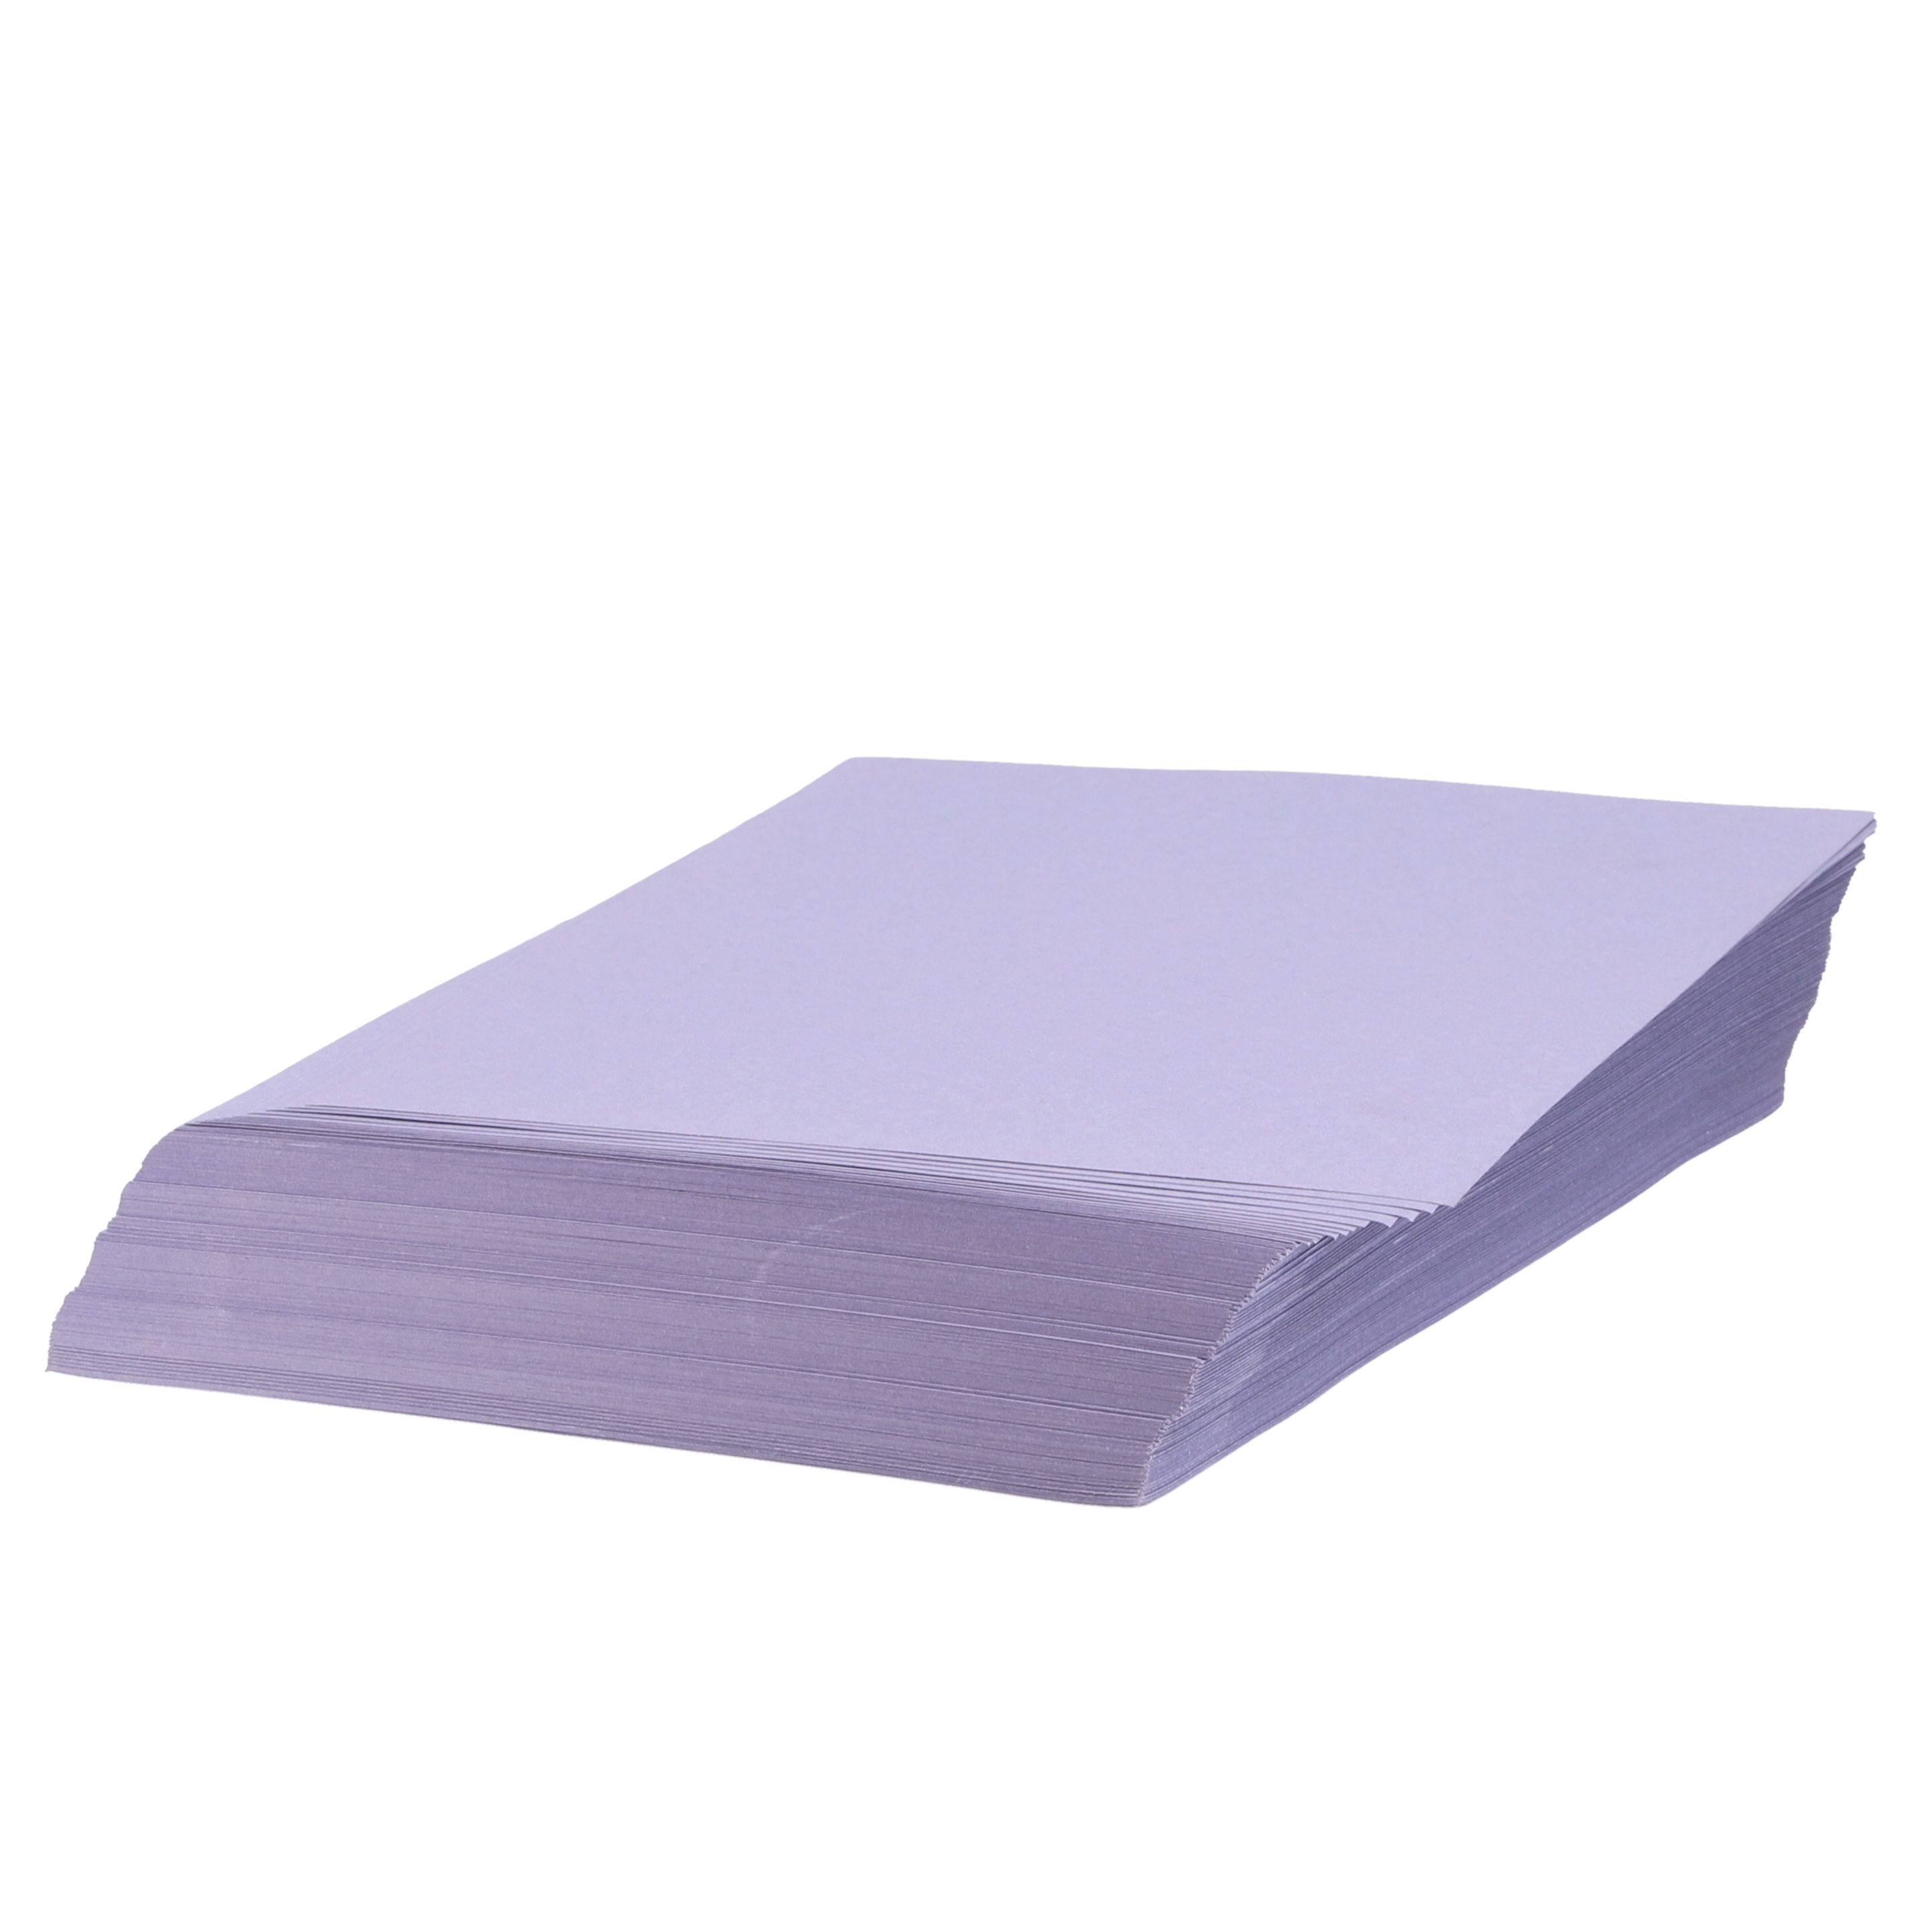 Blue Sugar Paper 100gsm Pack 250 A4